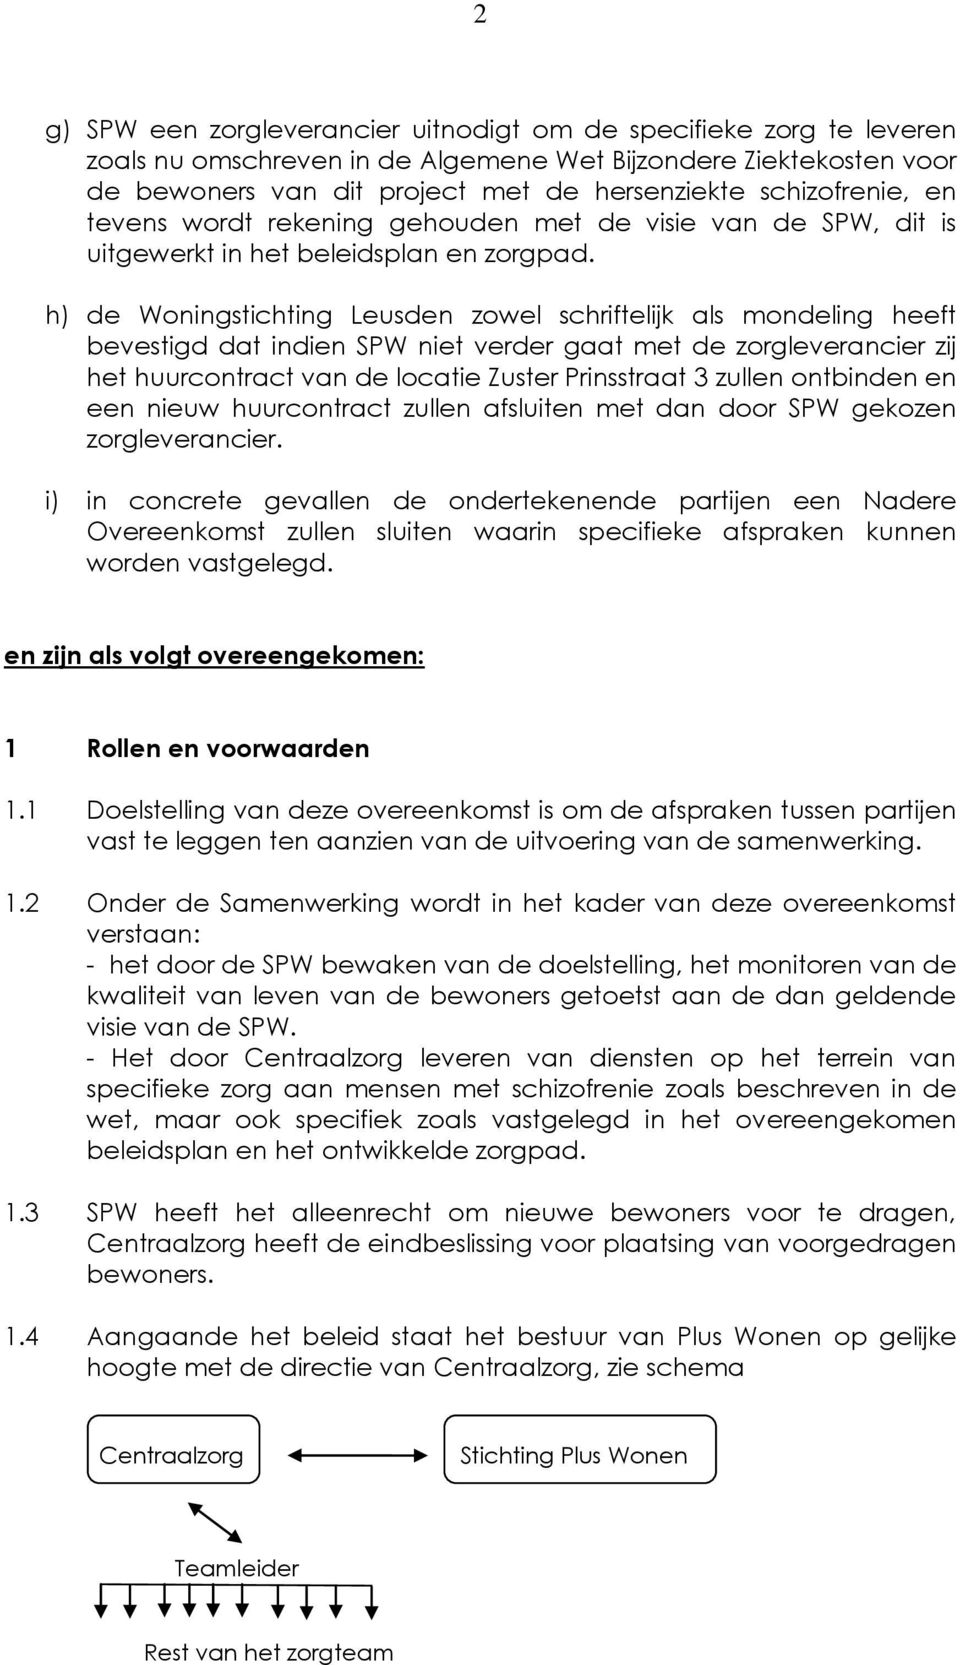 h) de Woningstichting Leusden zowel schriftelijk als mondeling heeft bevestigd dat indien SPW niet verder gaat met de zorgleverancier zij het huurcontract van de locatie Zuster Prinsstraat 3 zullen